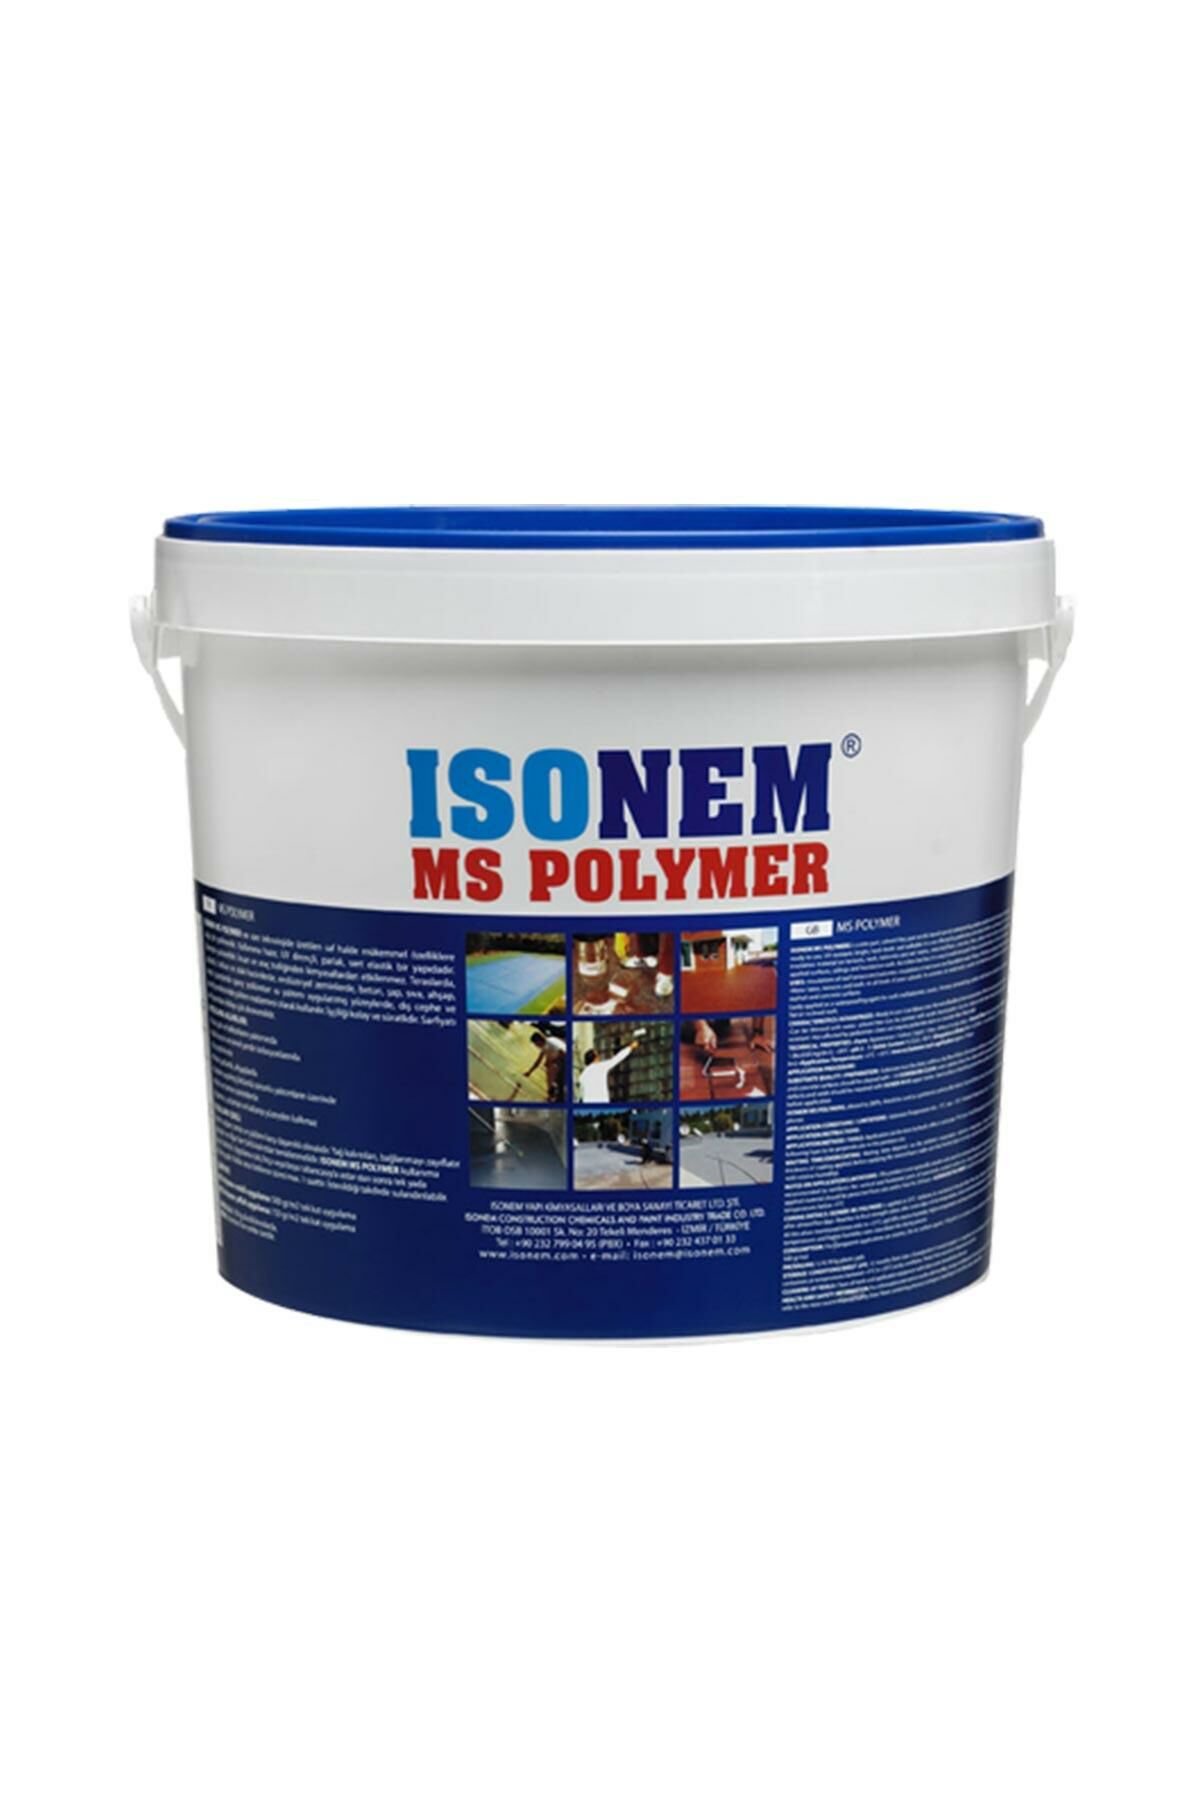 Isonem Ms Polymer Şeffaf Su Yalıtım Ürünü 10 kg